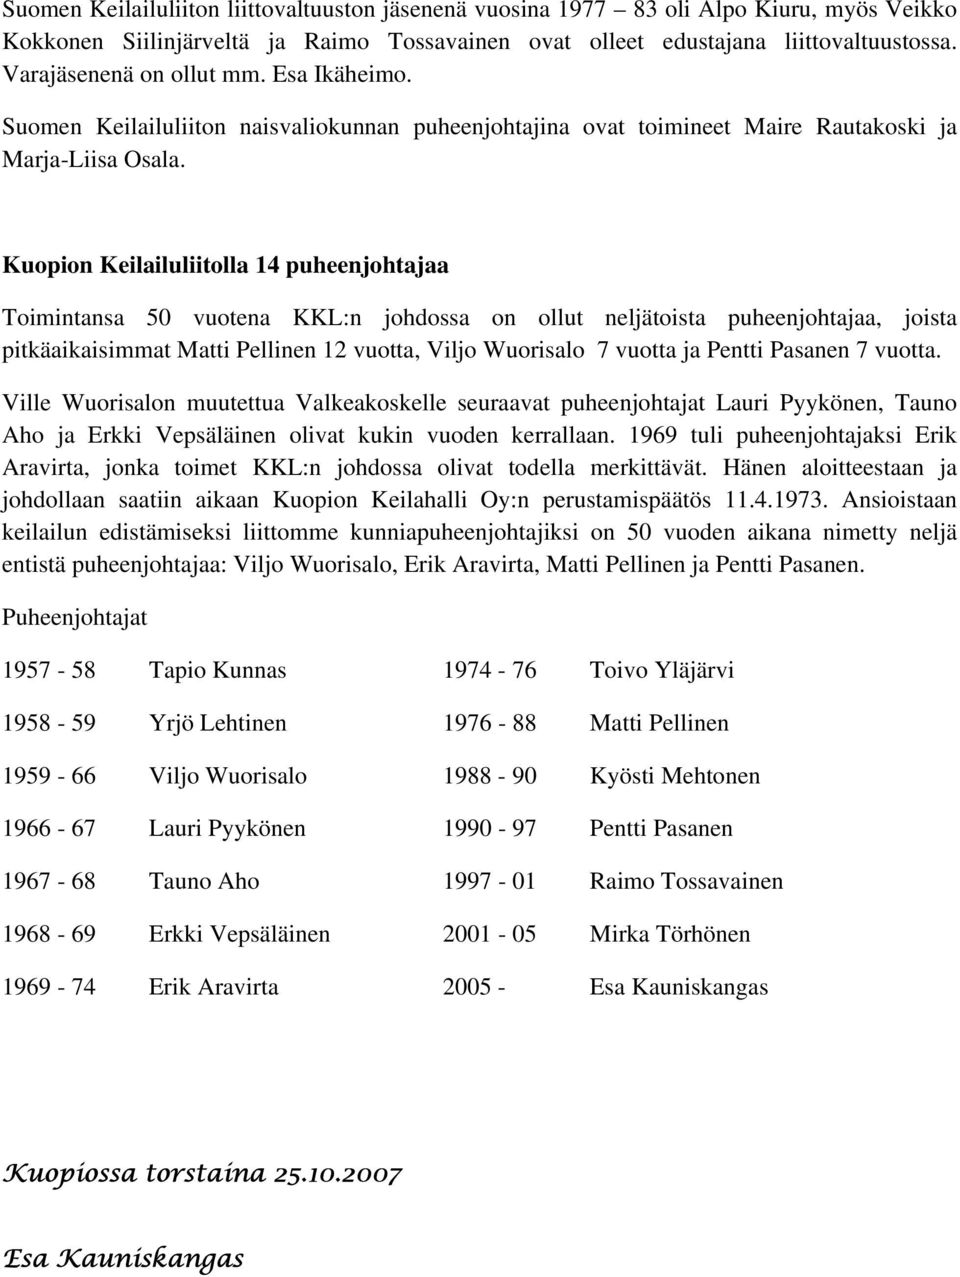 Kuopion Keilailuliitolla 14 puheenjohtajaa Toimintansa 50 vuotena KKL:n johdossa on ollut neljätoista puheenjohtajaa, joista pitkäaikaisimmat Matti Pellinen 12 vuotta, Viljo Wuorisalo 7 vuotta ja